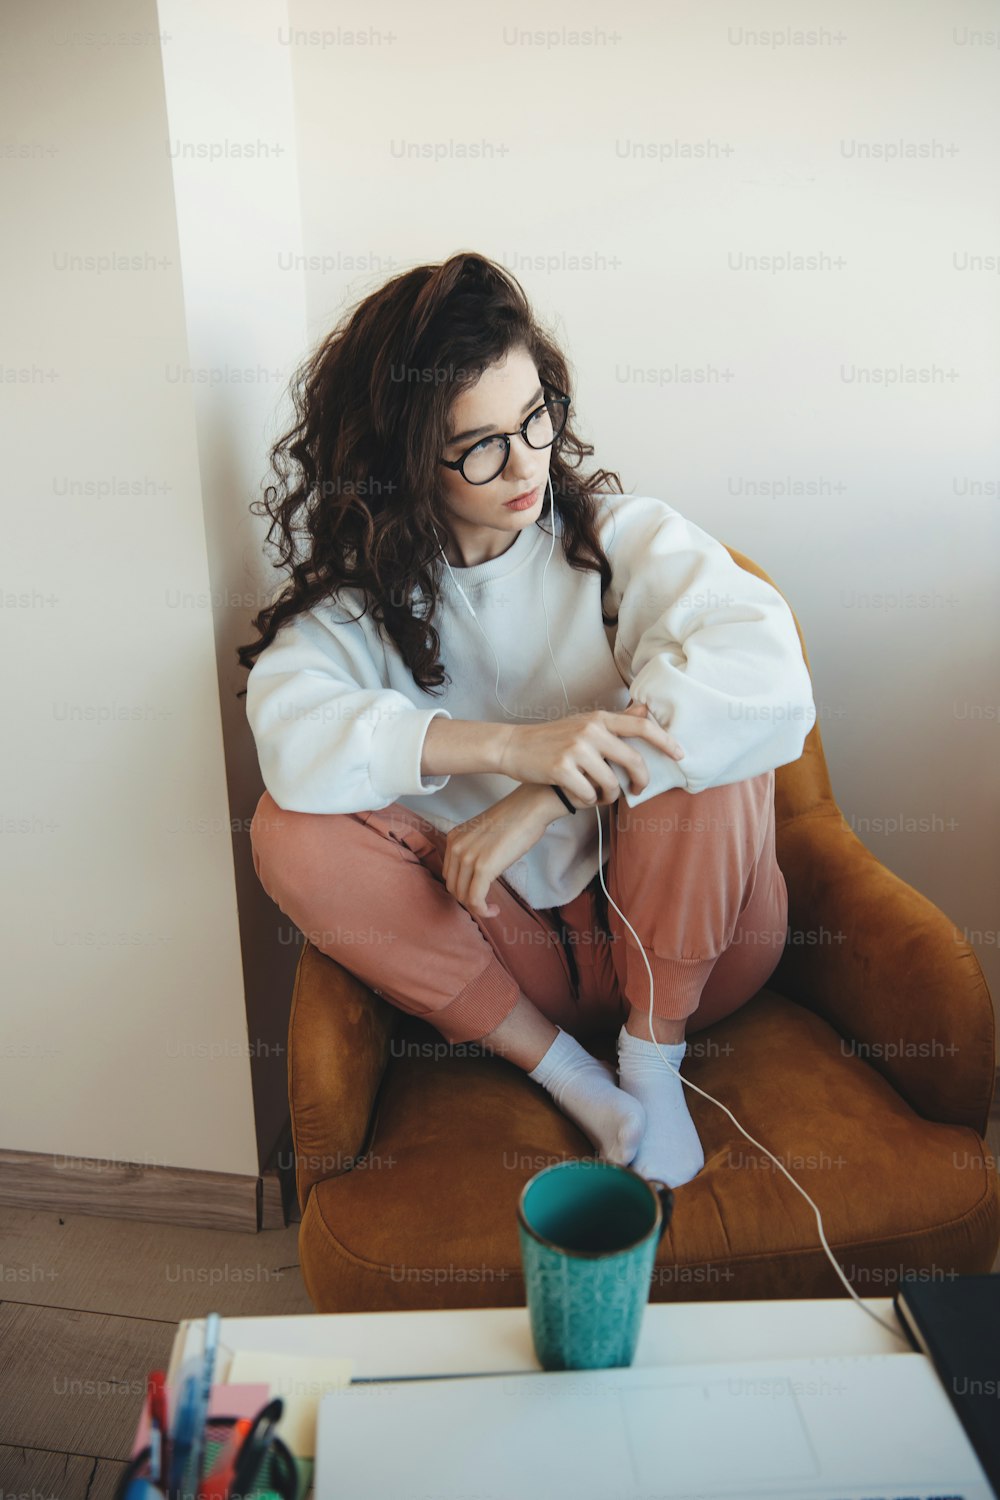 곱슬머리와 안경을 쓴 집중된 백인 여성이 안락의자에 앉아 커피를 마시면서 음악을 듣고 있다